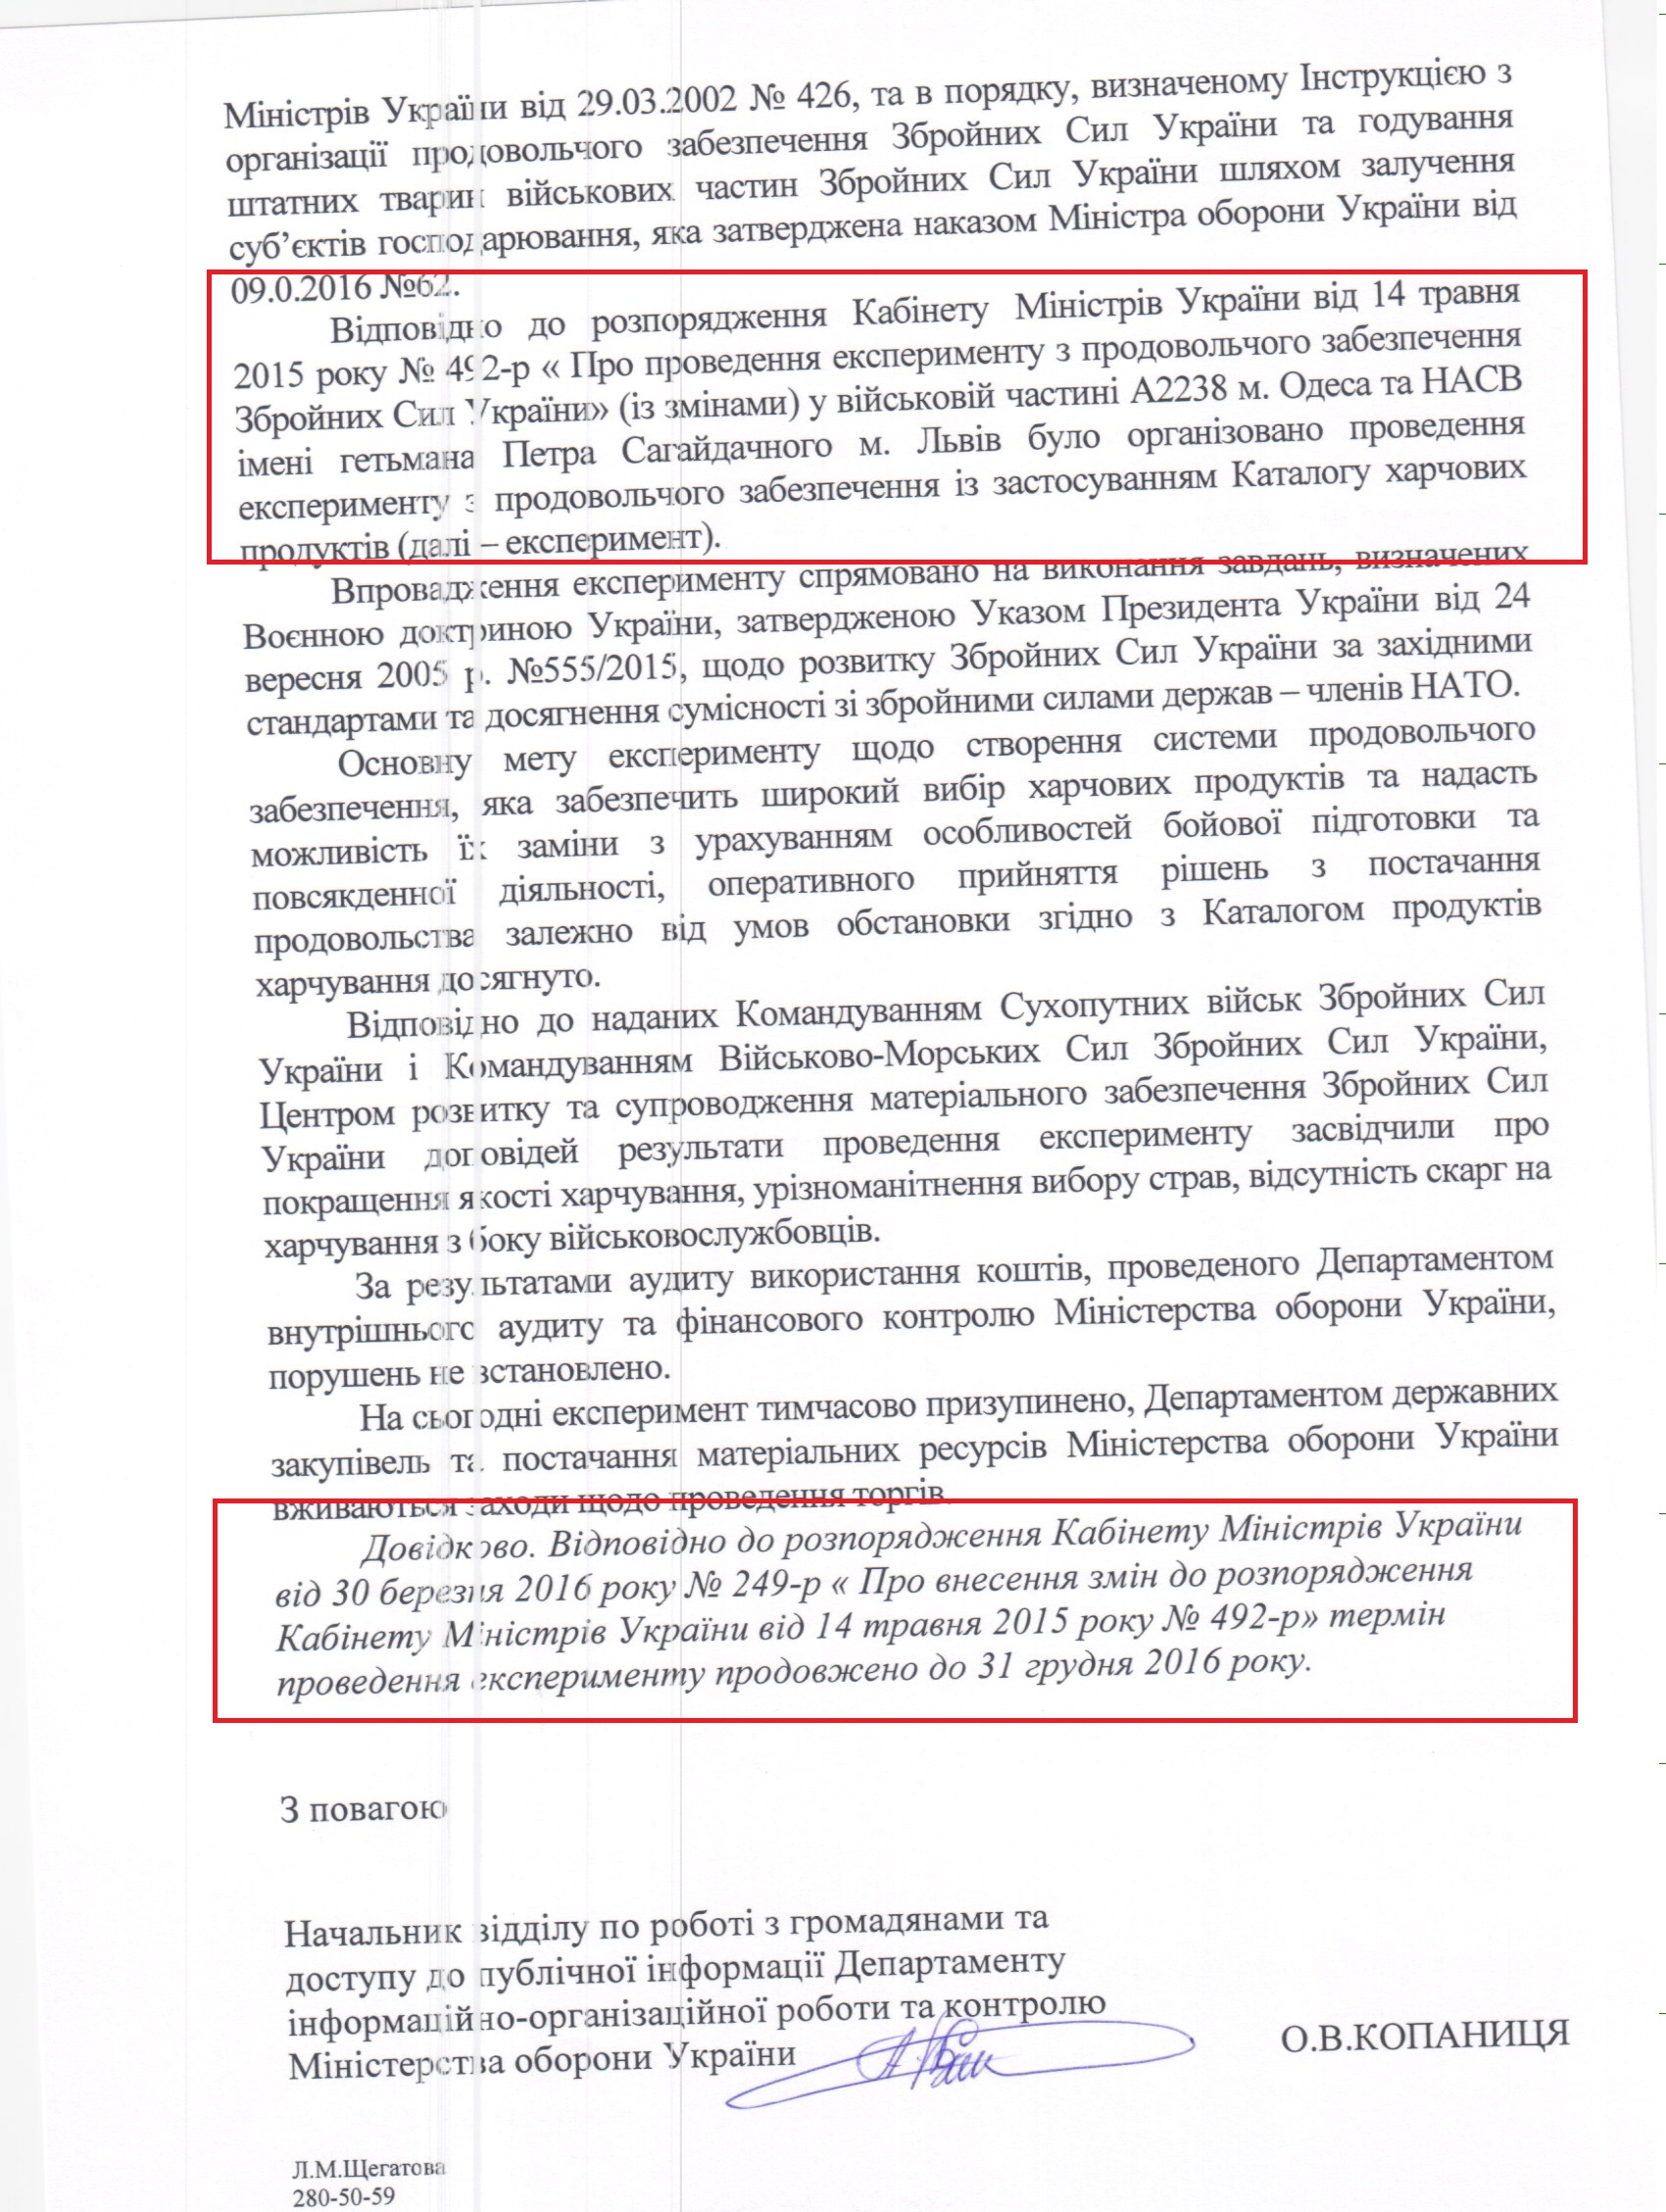 Лист міністерства оборони України від 31 жовтня 2016 року